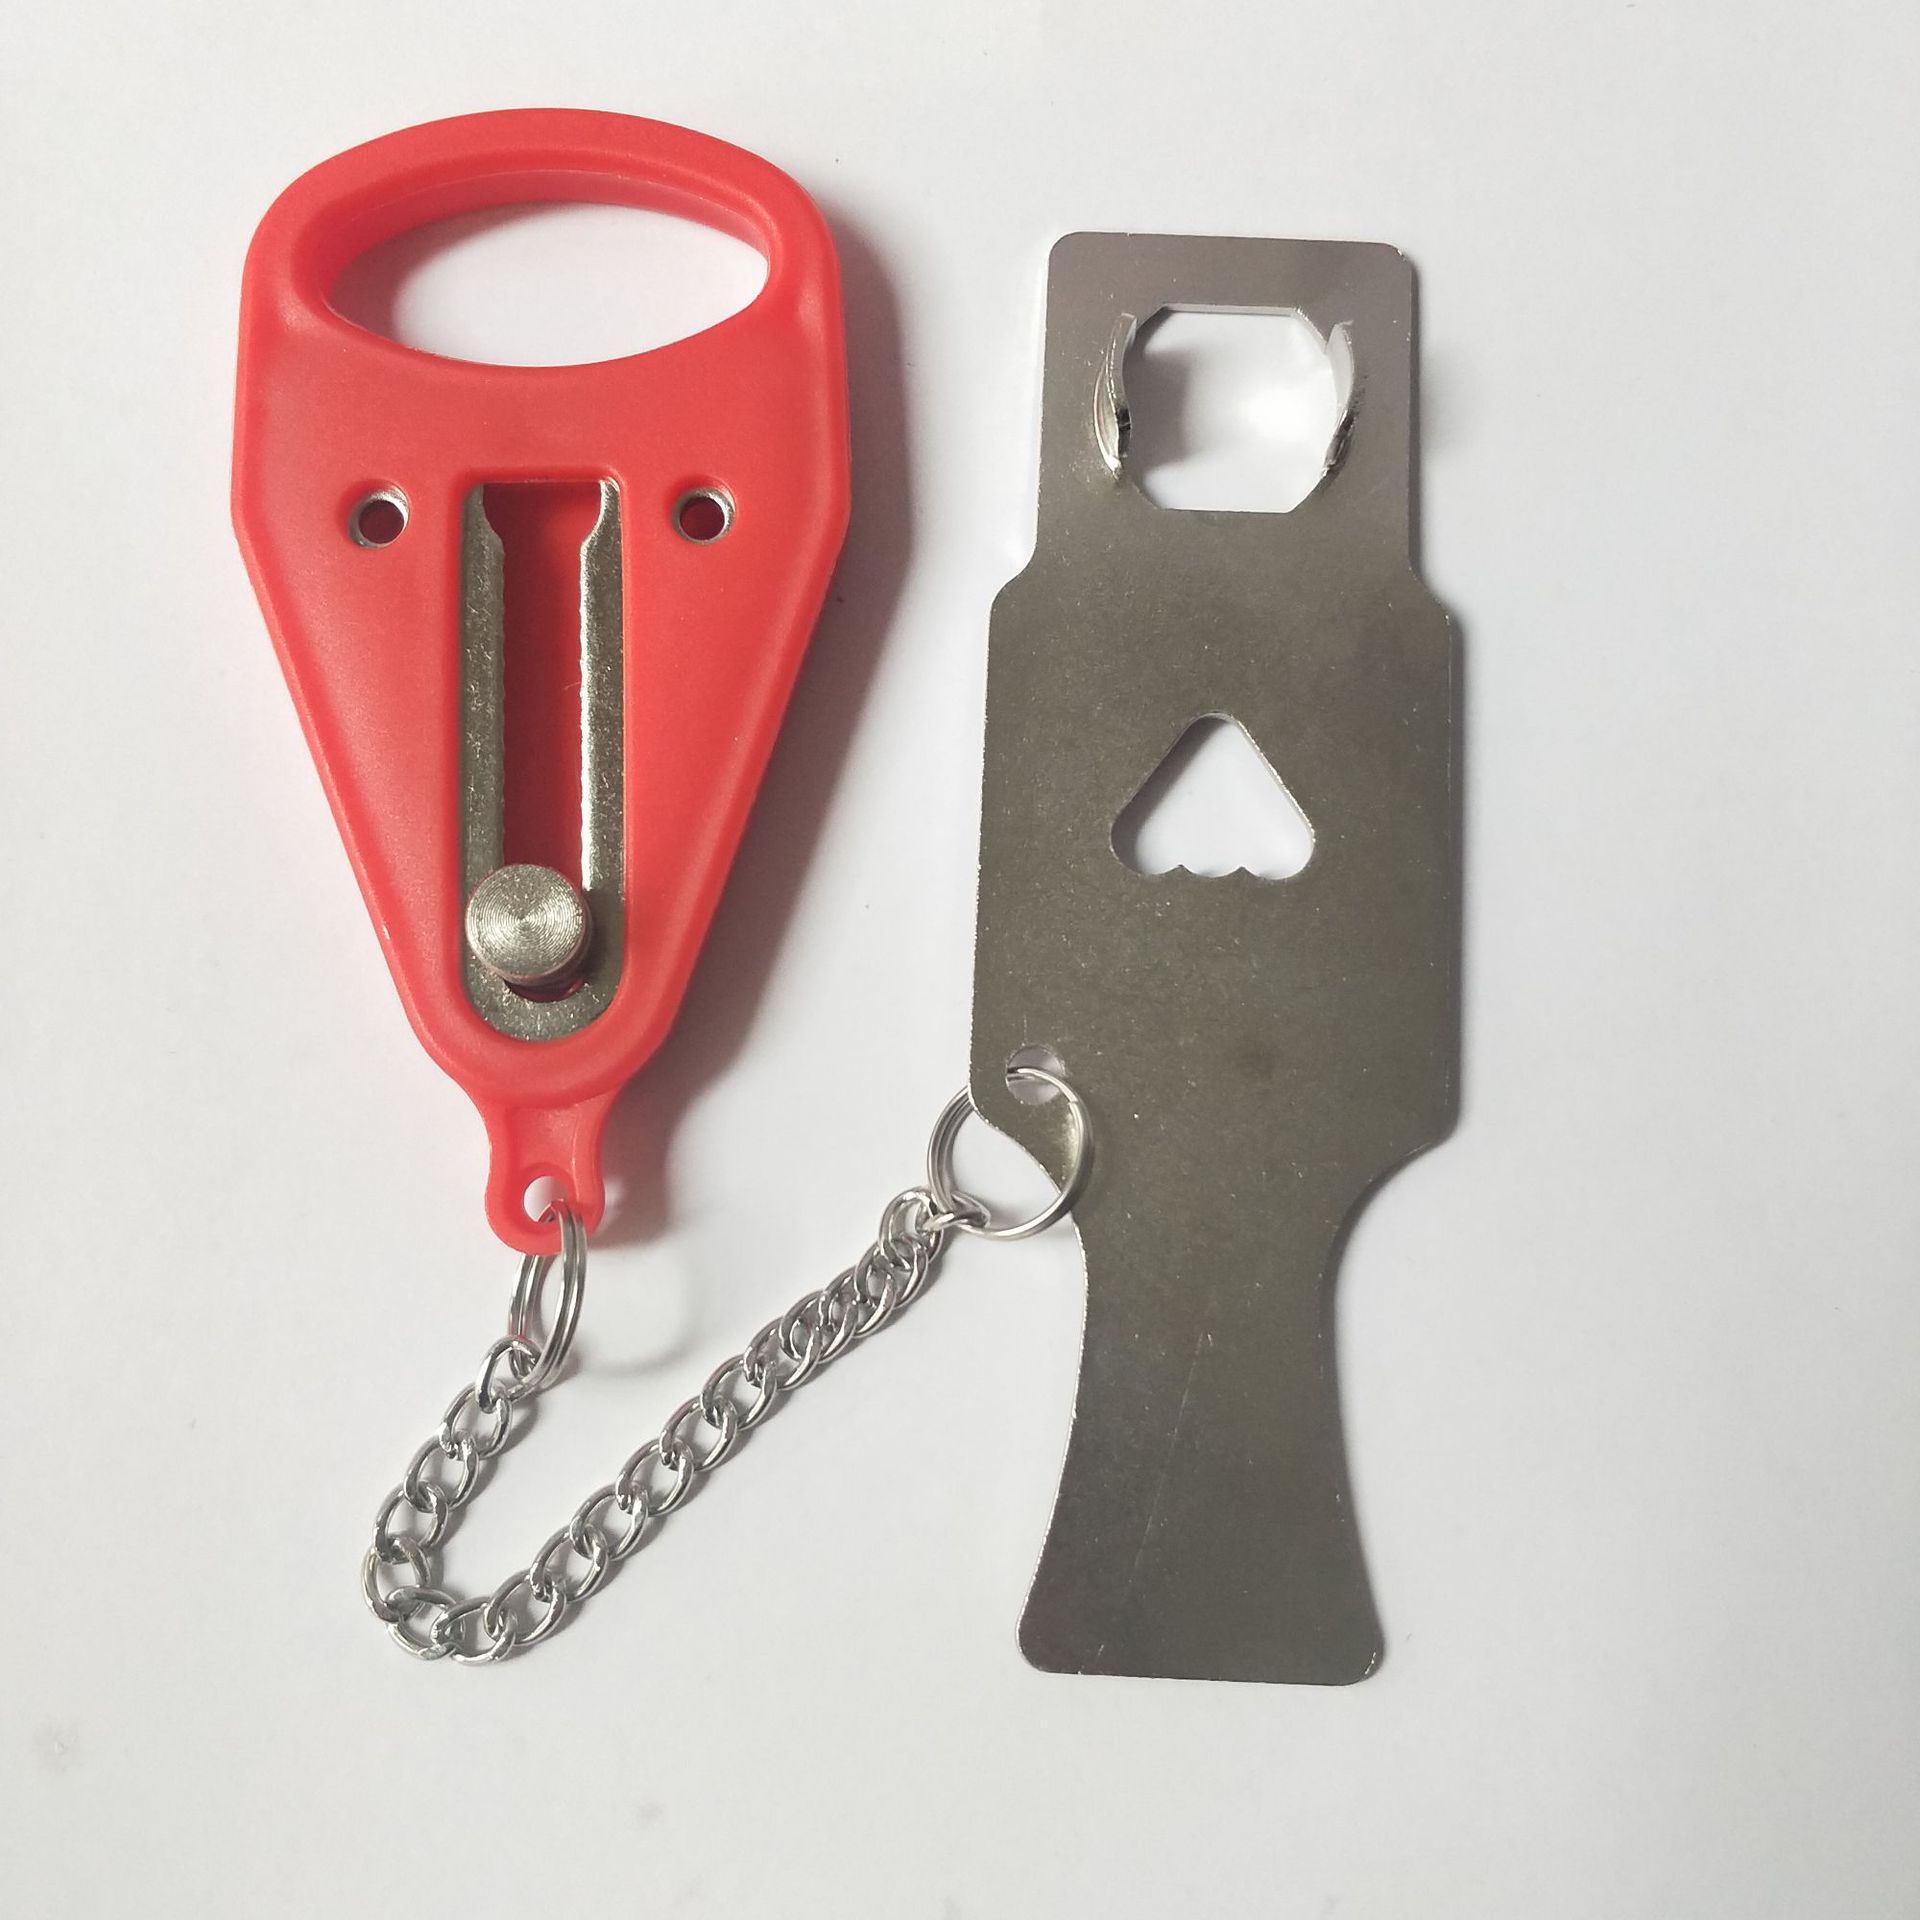 塑料搭扣锁_厂家直销 六联锁具安全搭扣锁 钢制锁 塑料绝缘 - 阿里巴巴